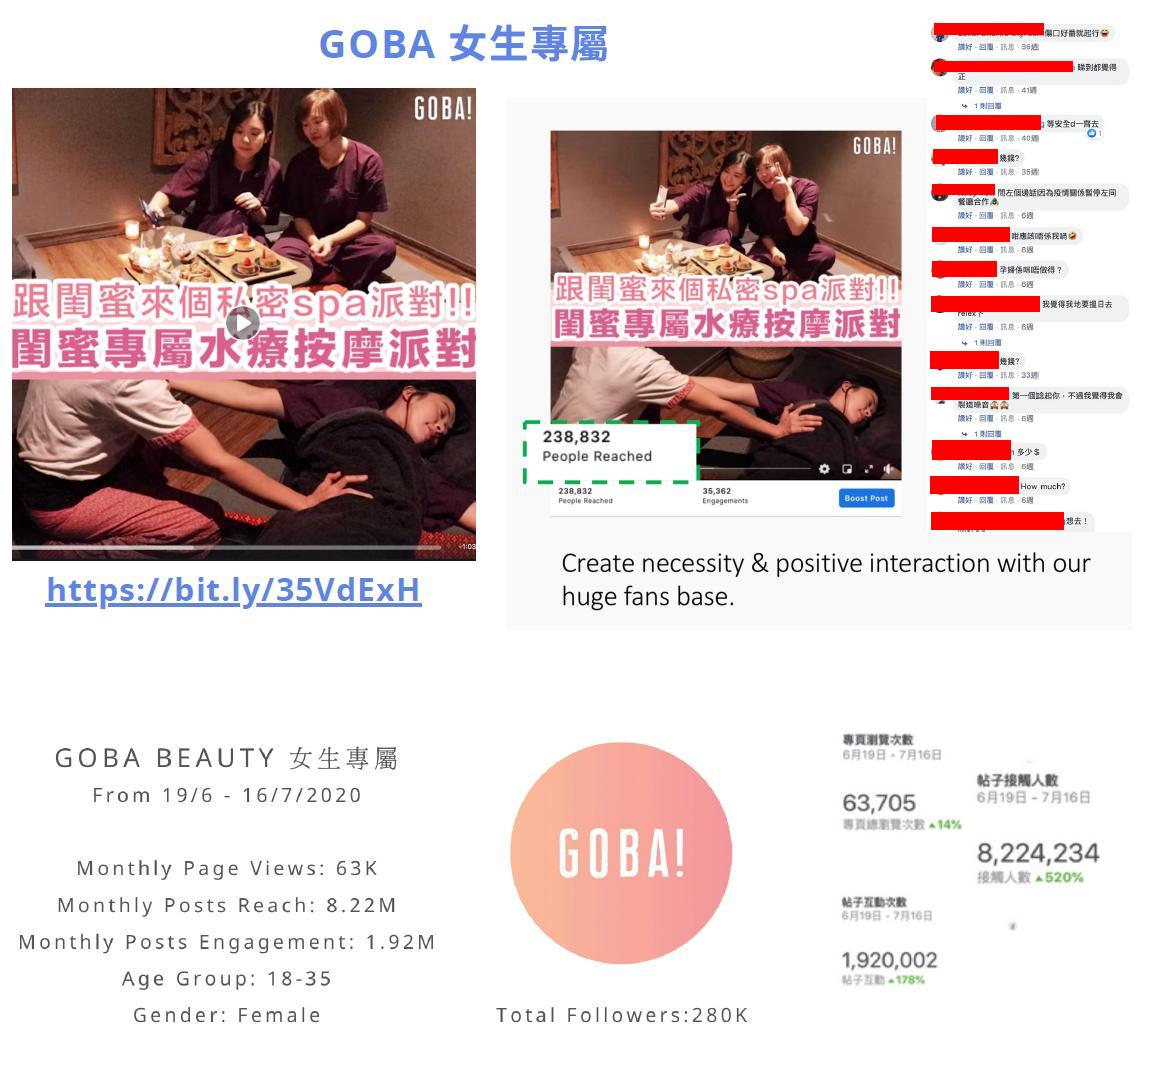 參考成功 Facebook 專頁例子: GOBA女生專屬 (28萬粉絲) @ 腦爸打網頁設計專家